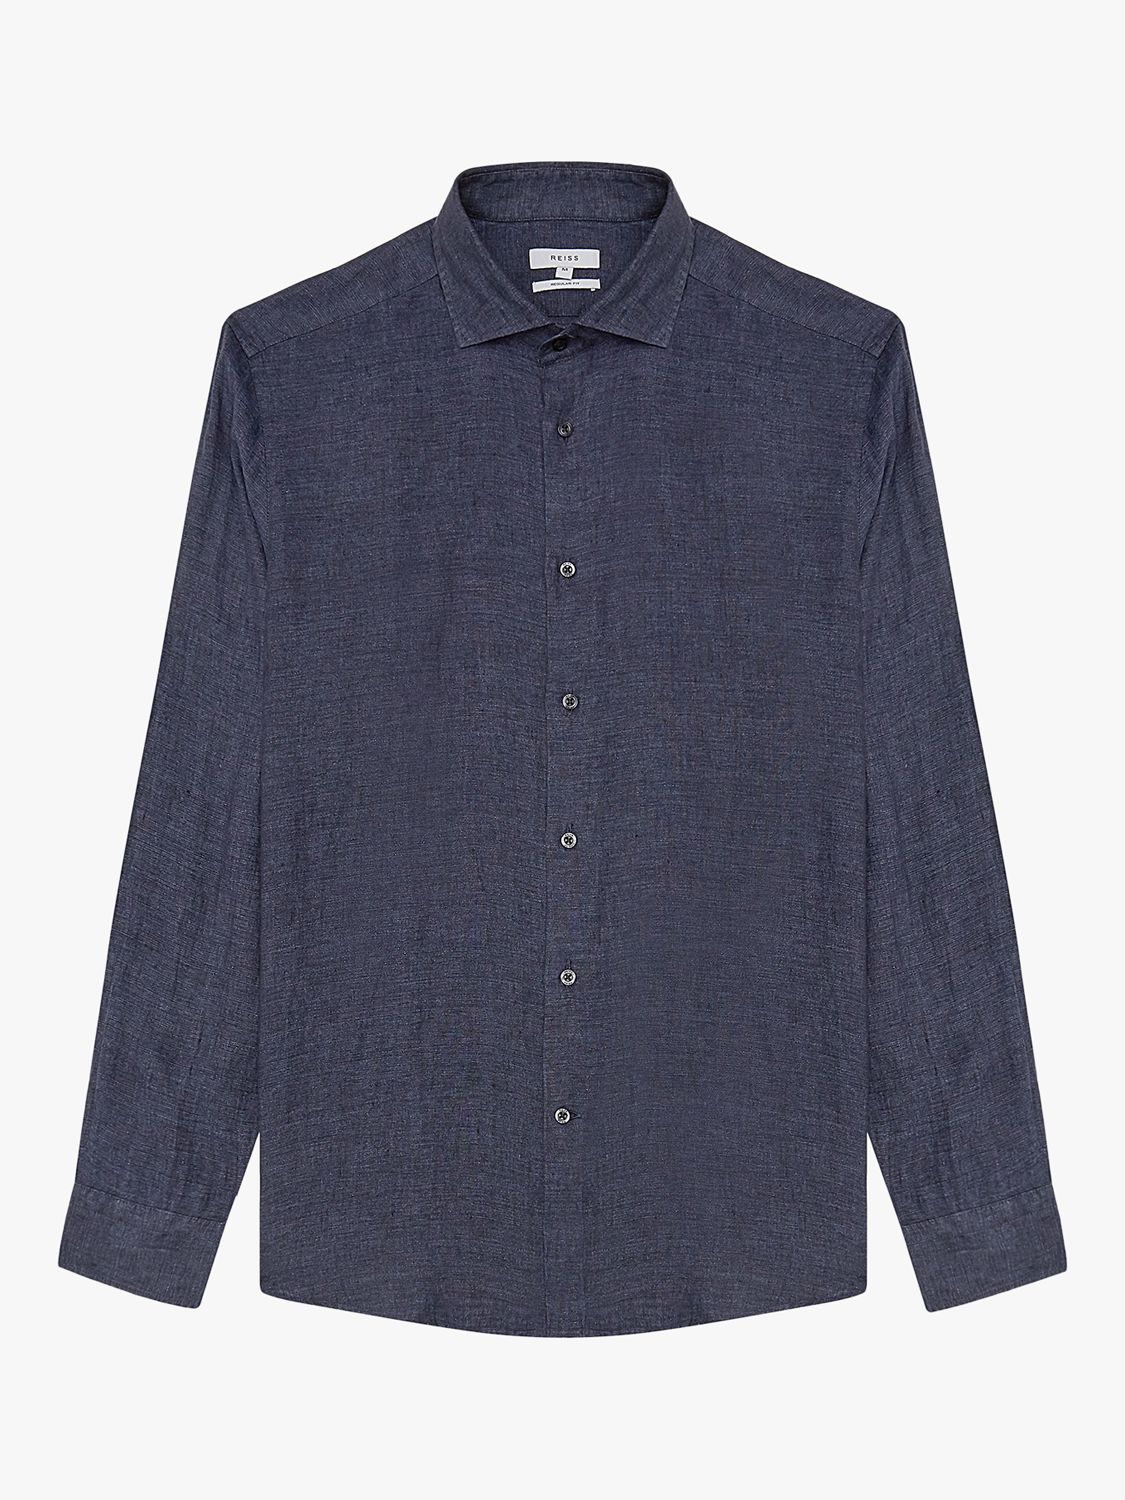 Reiss Ruban Linen Regular Fit Shirt, Navy at John Lewis & Partners